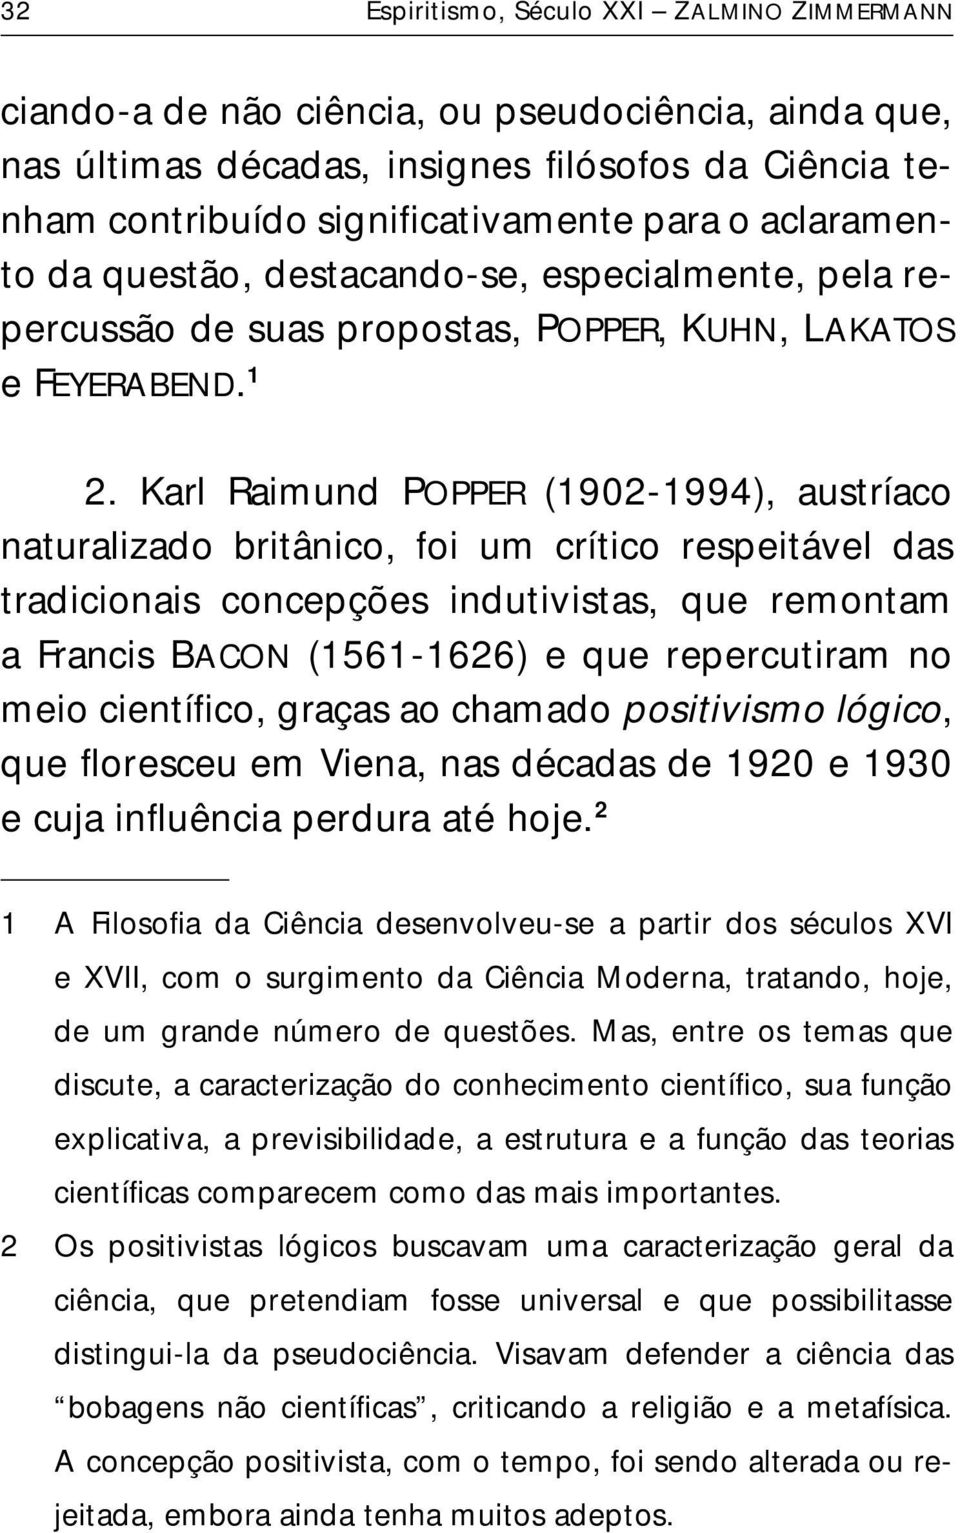 Karl Raimund POPPER (1902-1994), austríaco naturalizado britânico, foi um crítico respeitável das tradicionais concepções indutivistas, que remontam a Francis BACON (1561-1626) e que repercutiram no